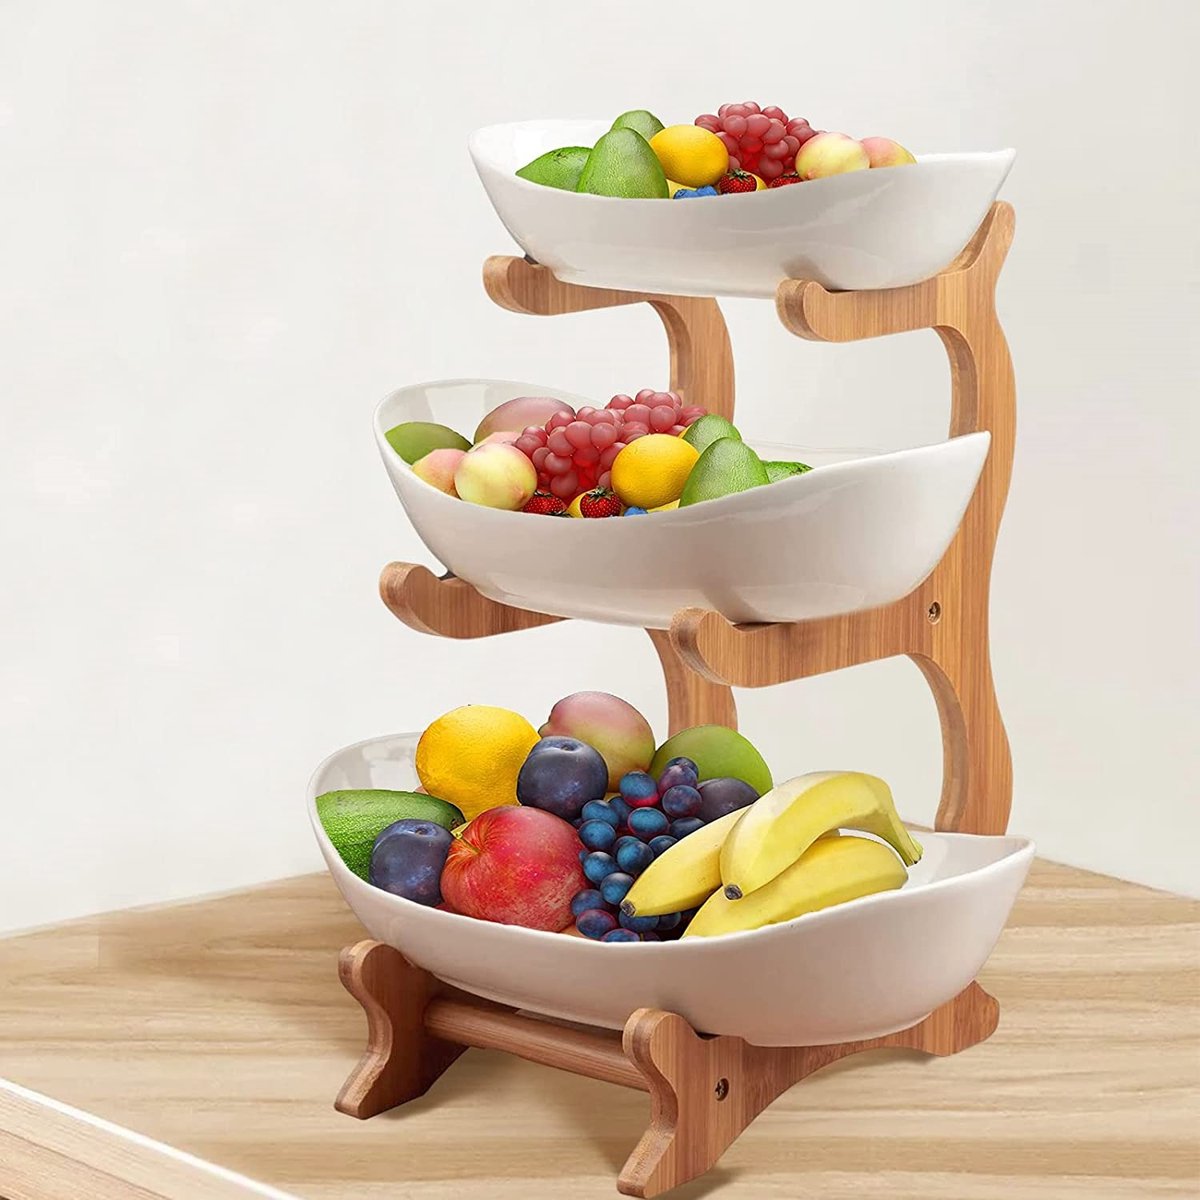 DESIGN fruitschaal - Etagere 3 laags – landelijk fruitmand hout keramiek - Schaal decoratie - voor fruit / groente / snacks / cadeau brood